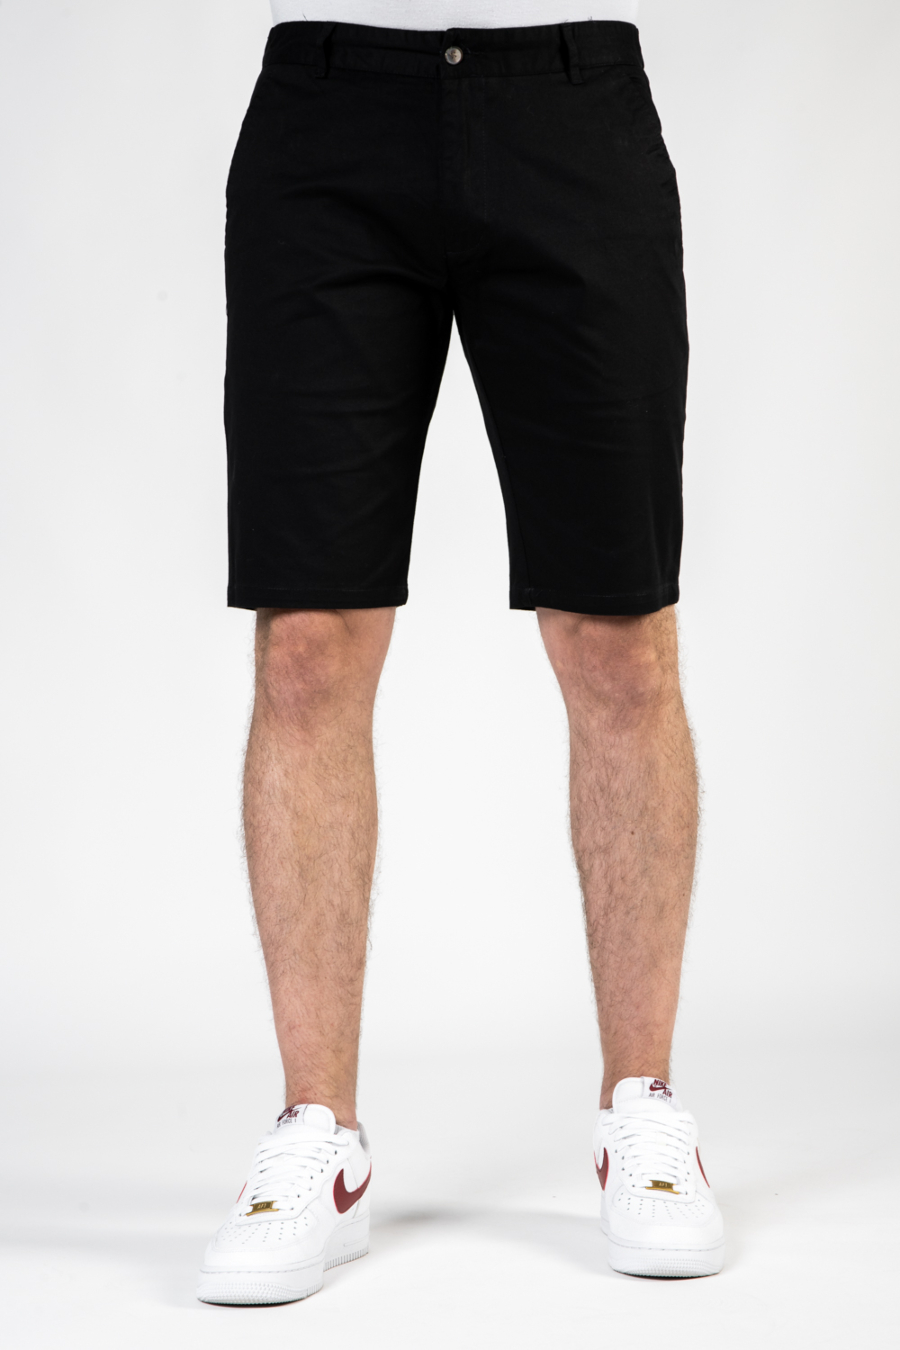 Moške kratke hlače P7303-1, črne